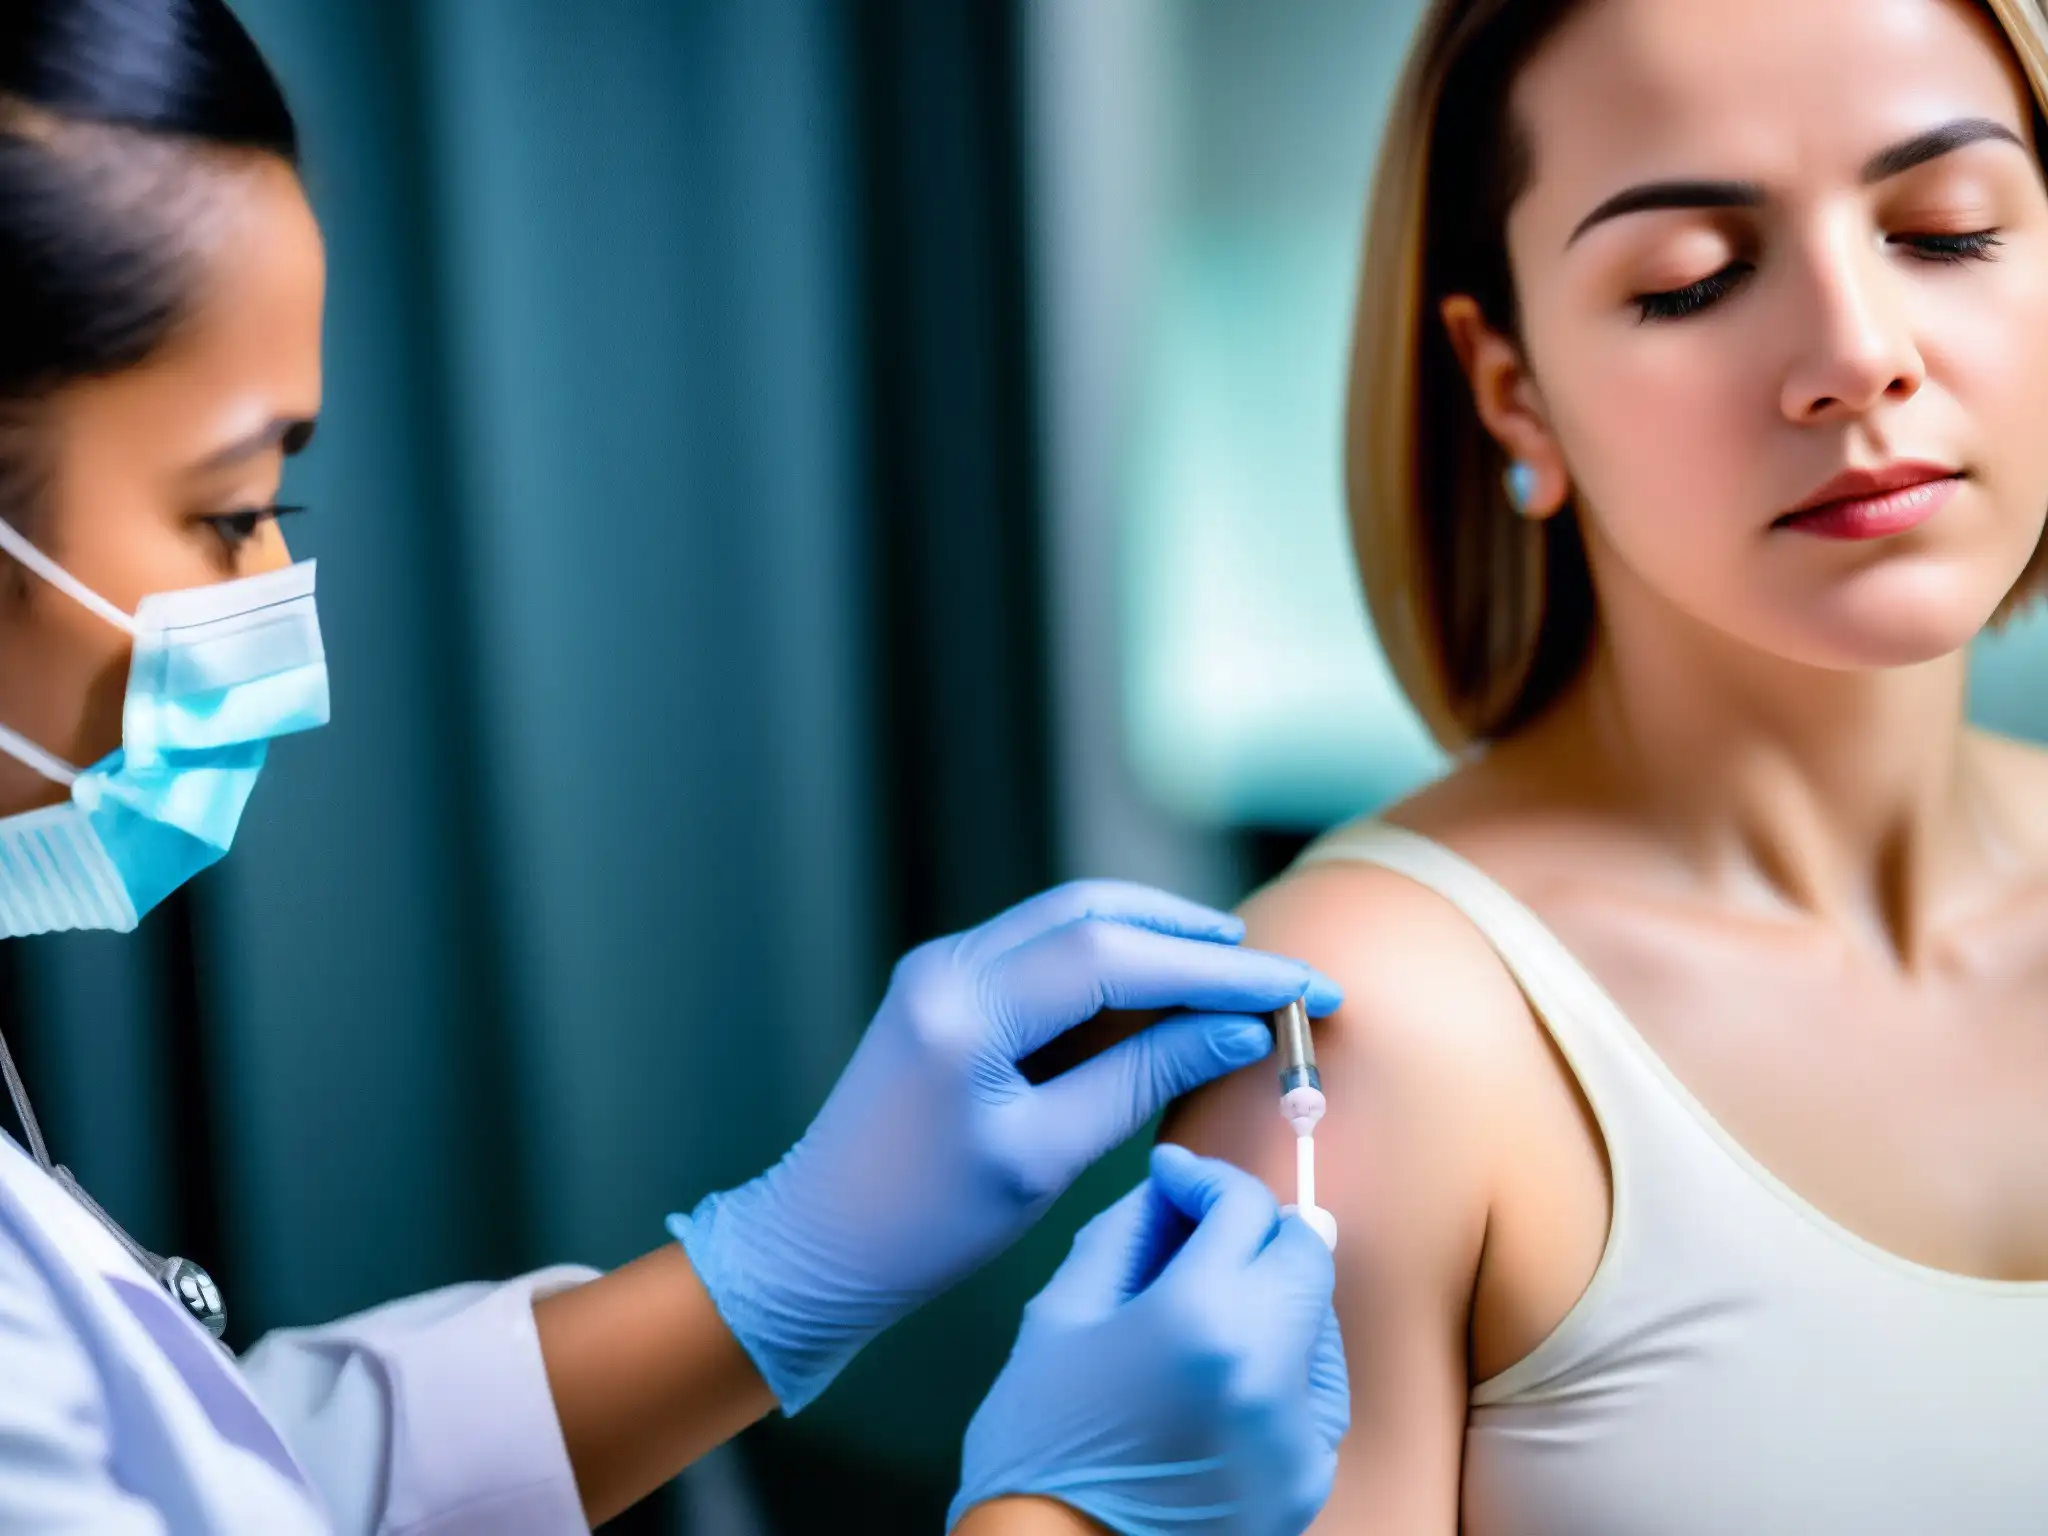 Una persona recibe una vacuna con determinación en un entorno clínico, destacando la importancia del proceso de vacunación